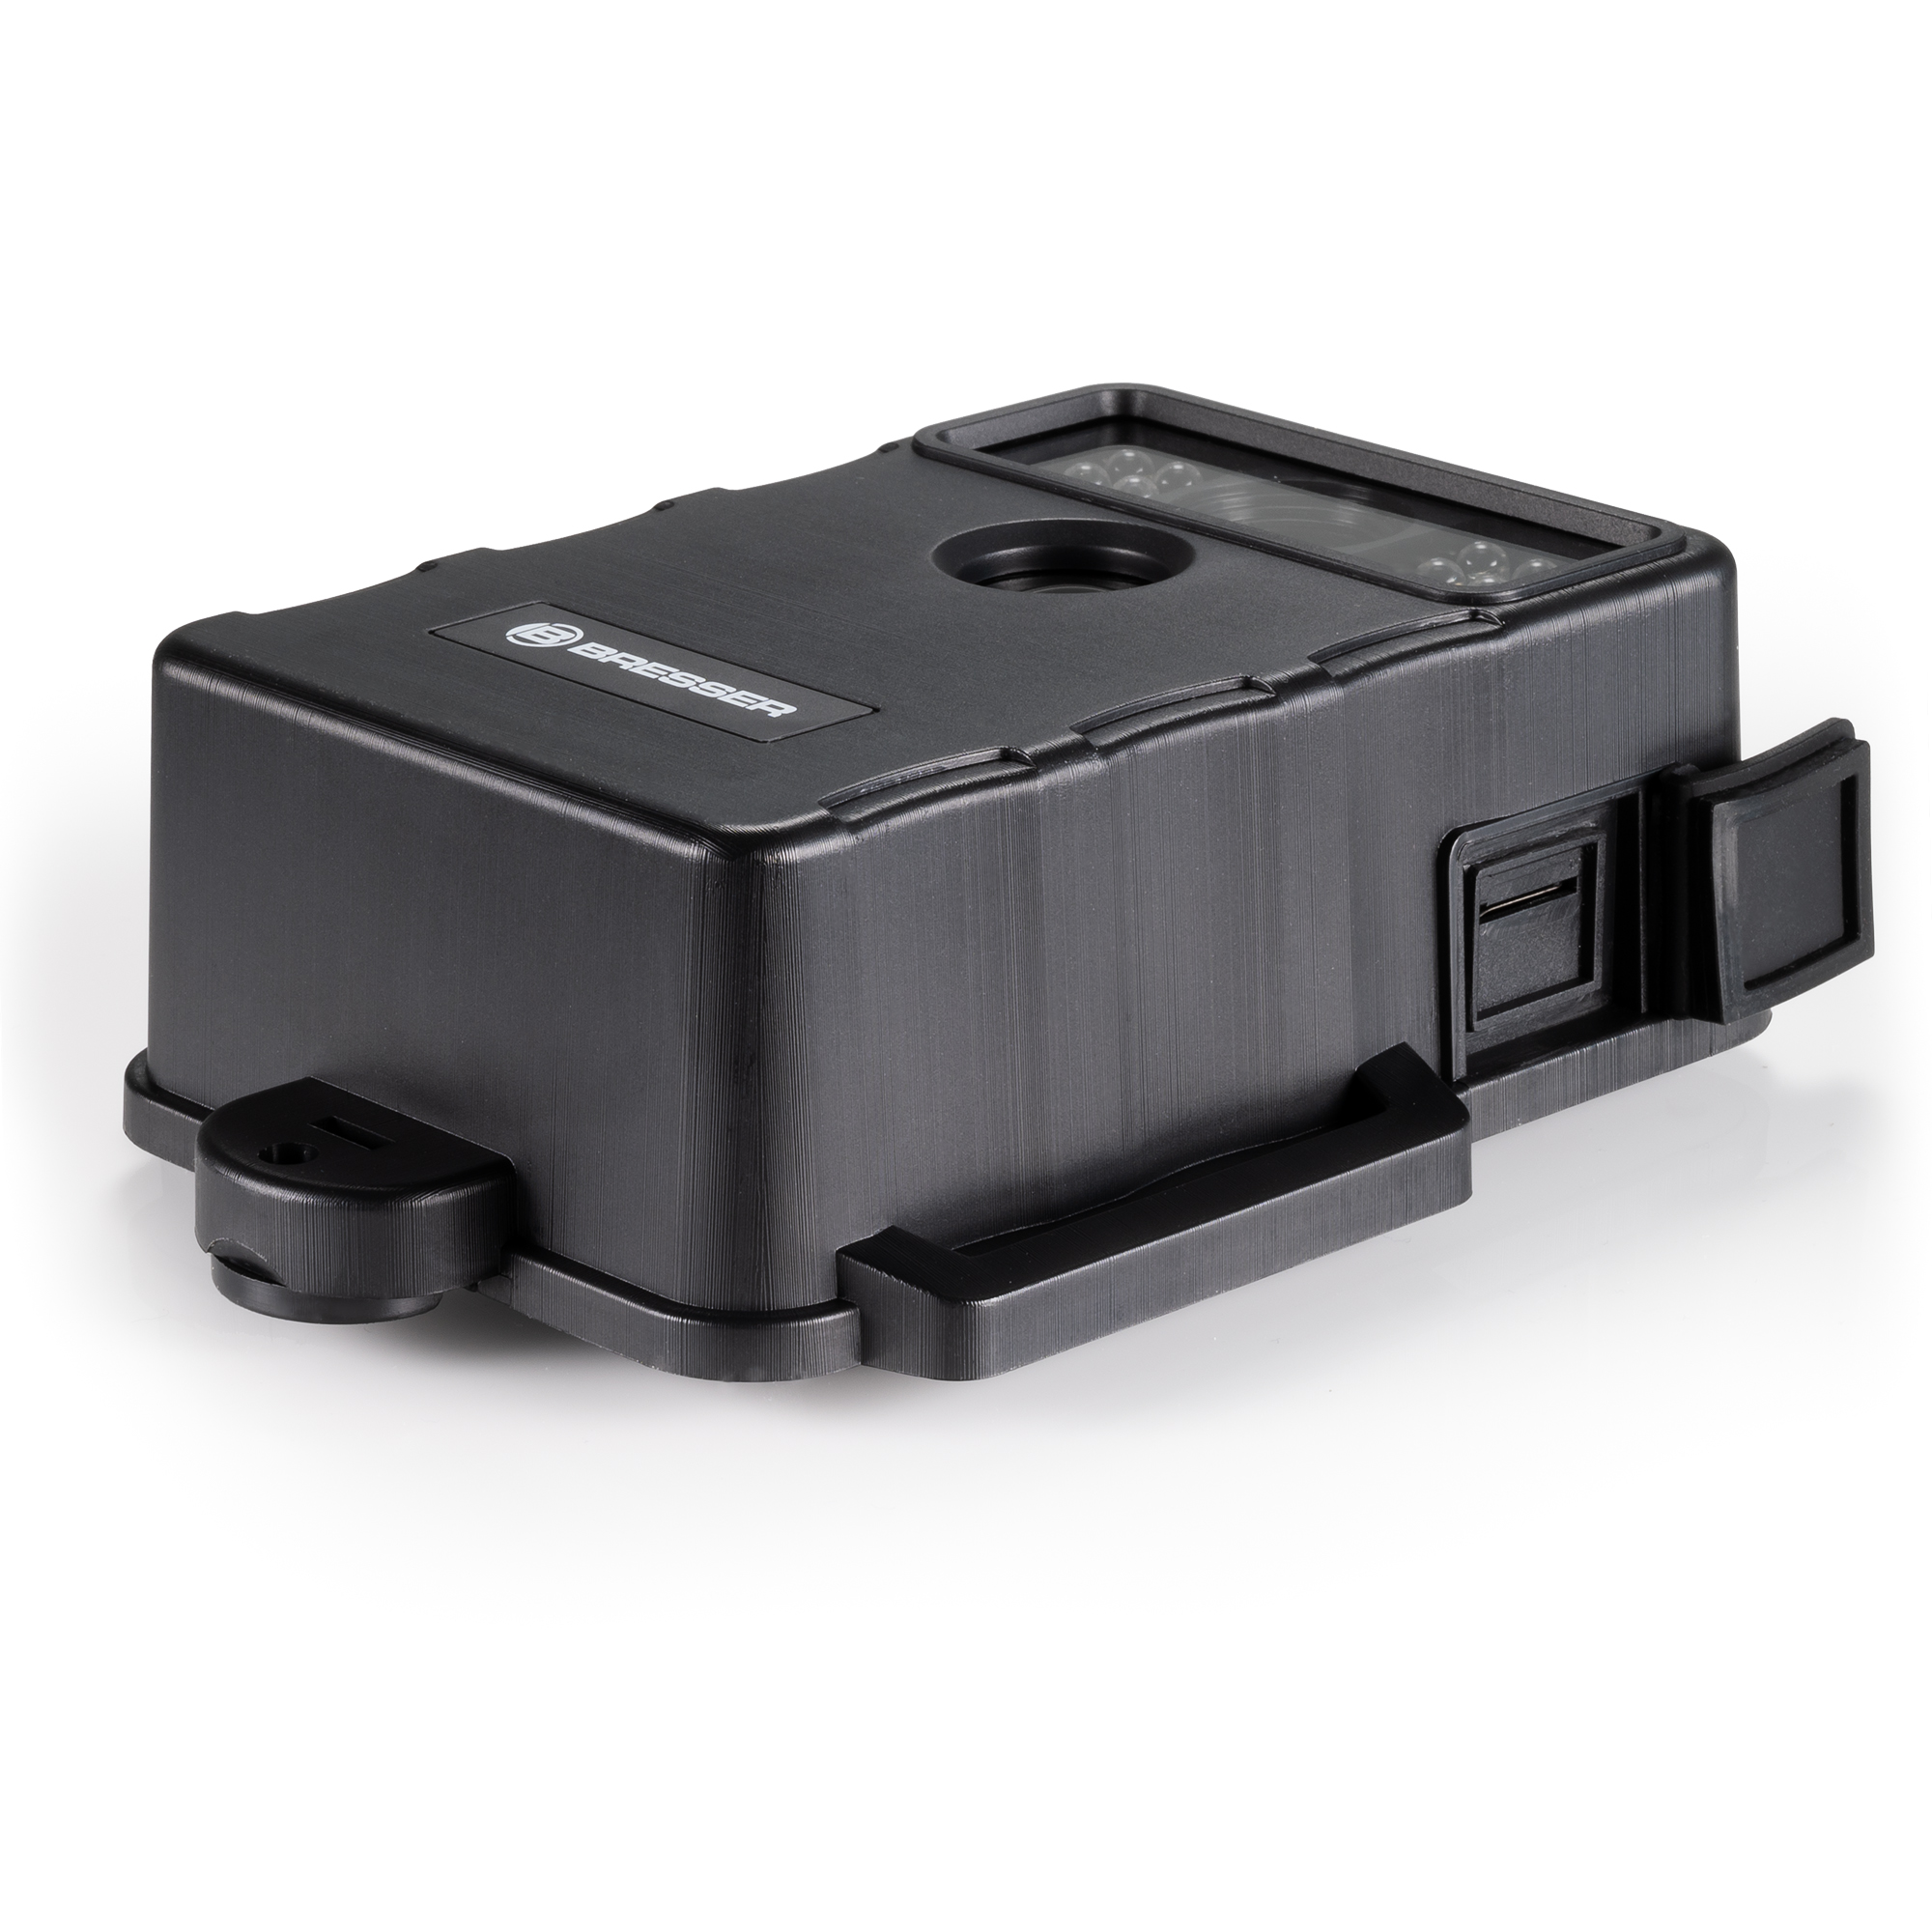 BRESSER 5 MP Full-HD wildlife camera with PIR motion sensor